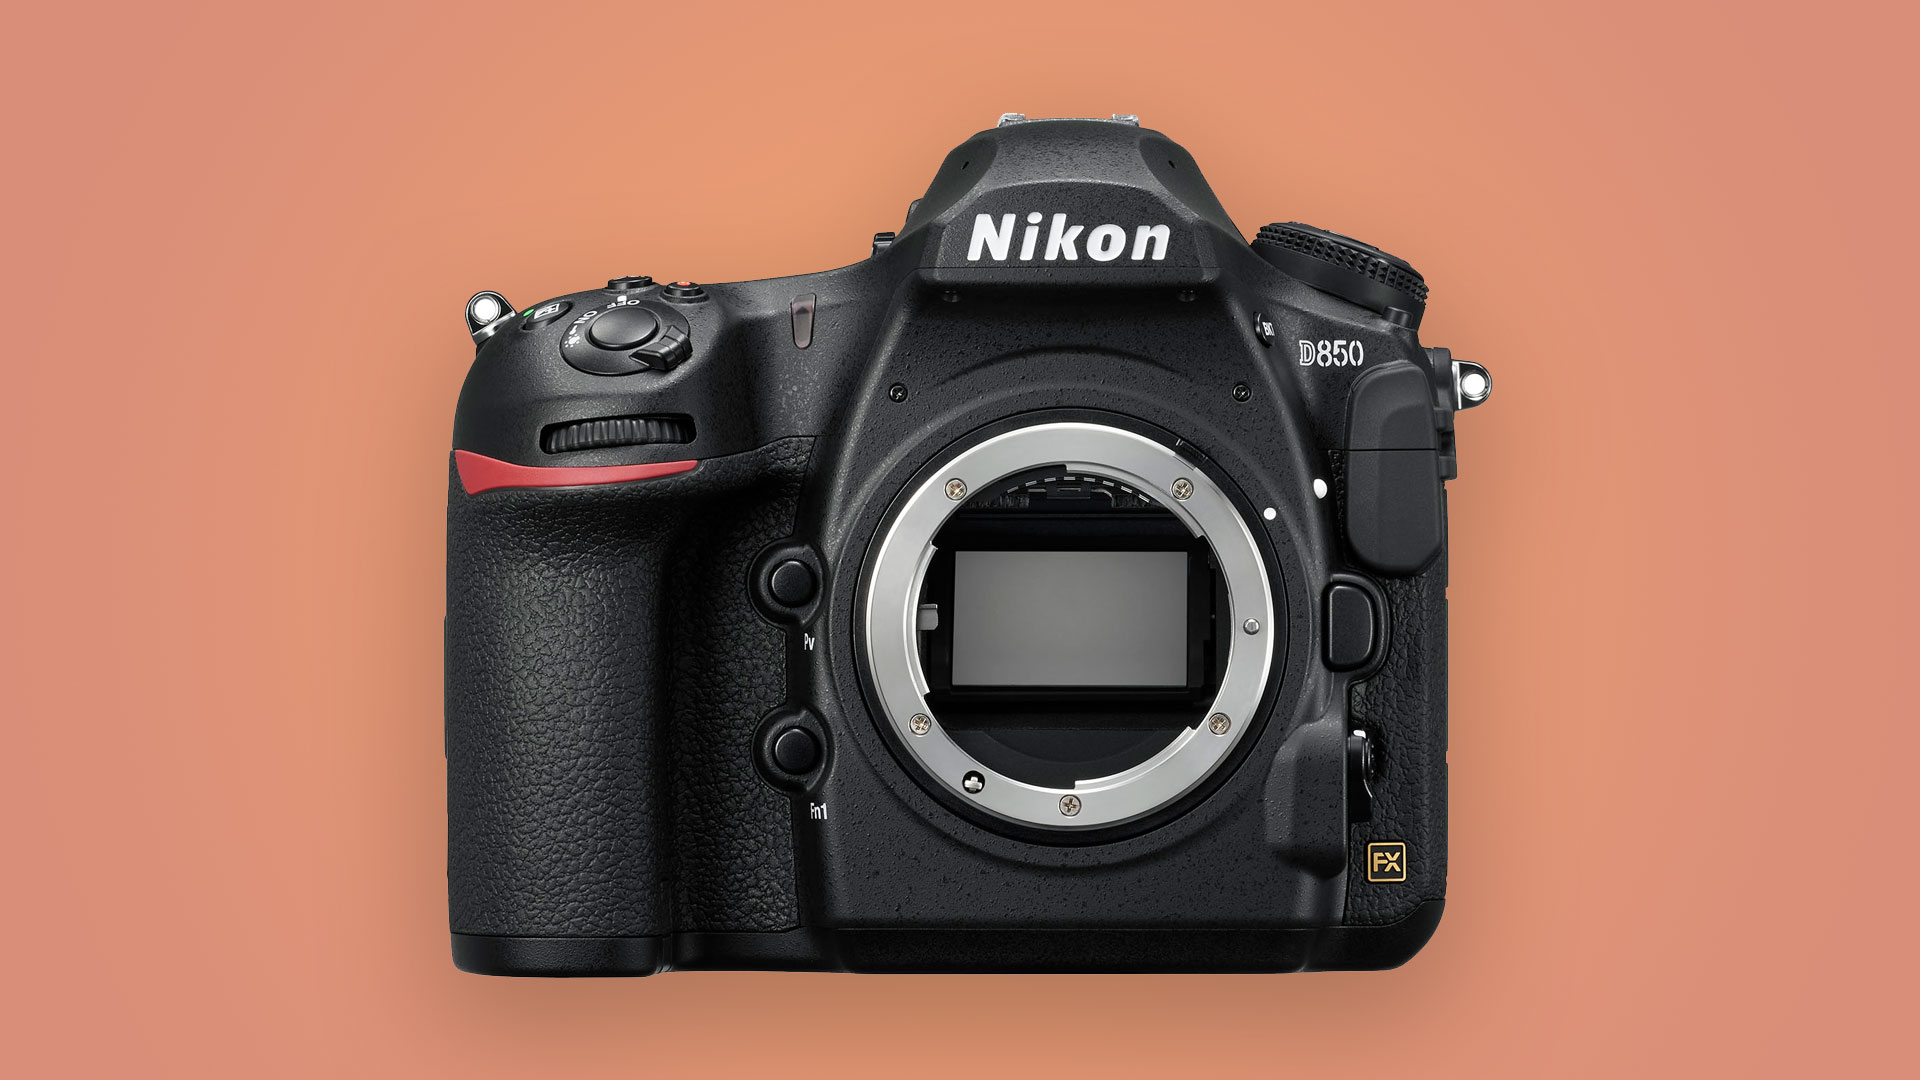 Nikon D500 Camera Review and Real World Use